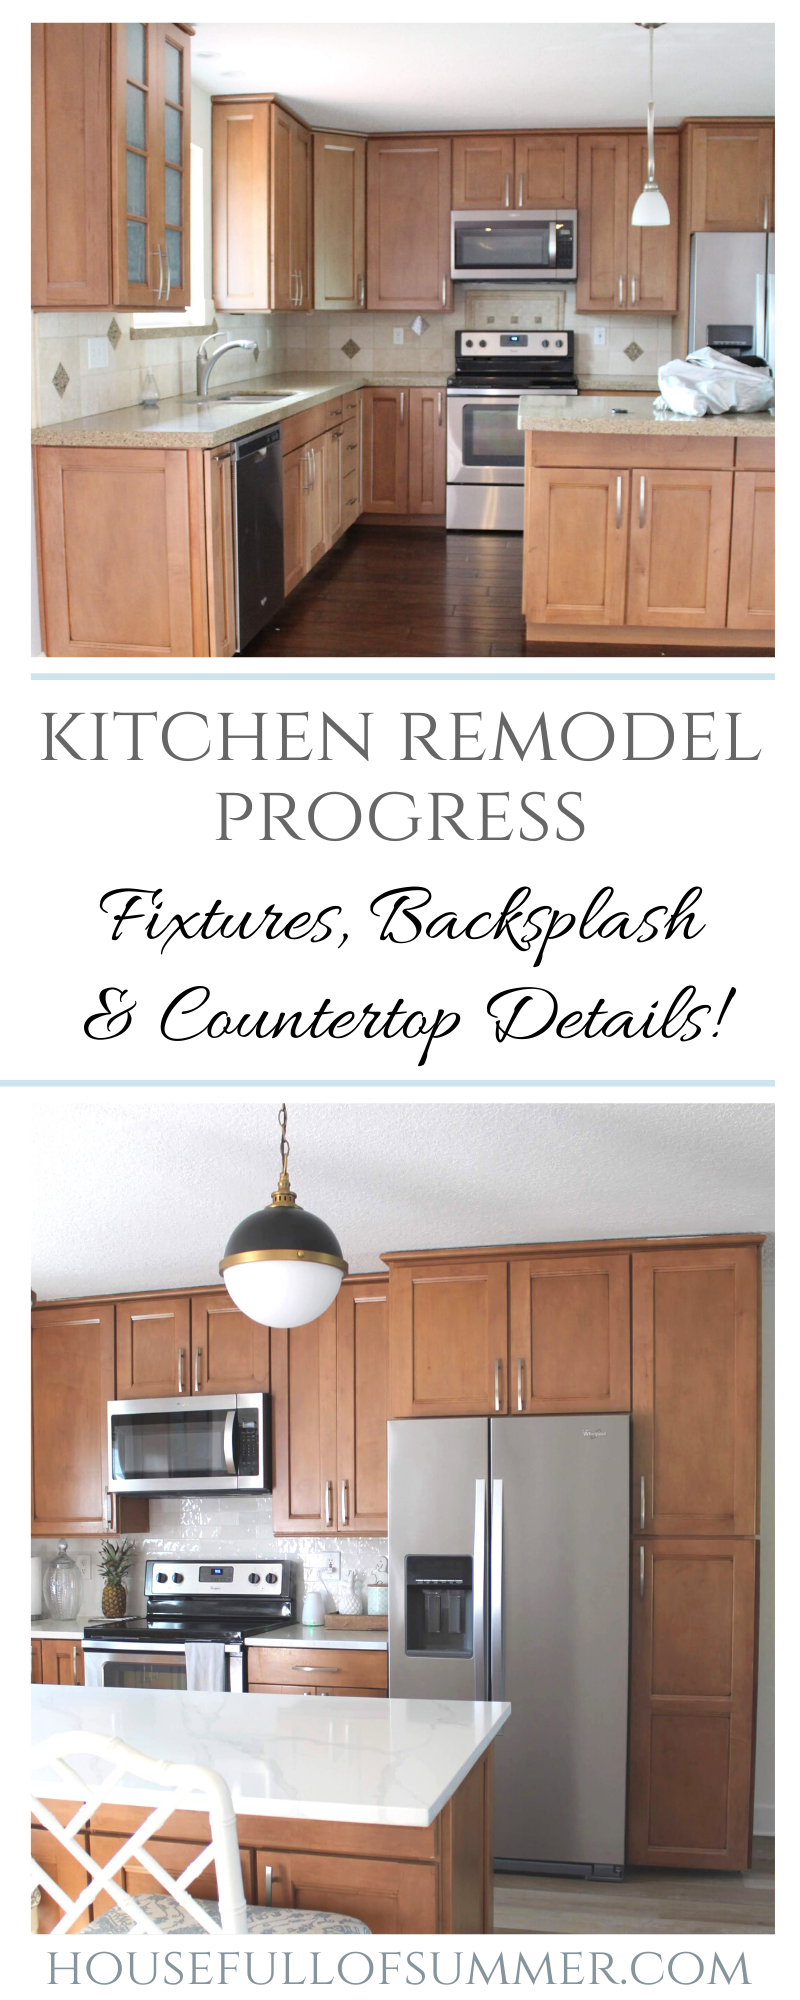 Kitchen Remodel Progress Fixtures Backsplash Countertop